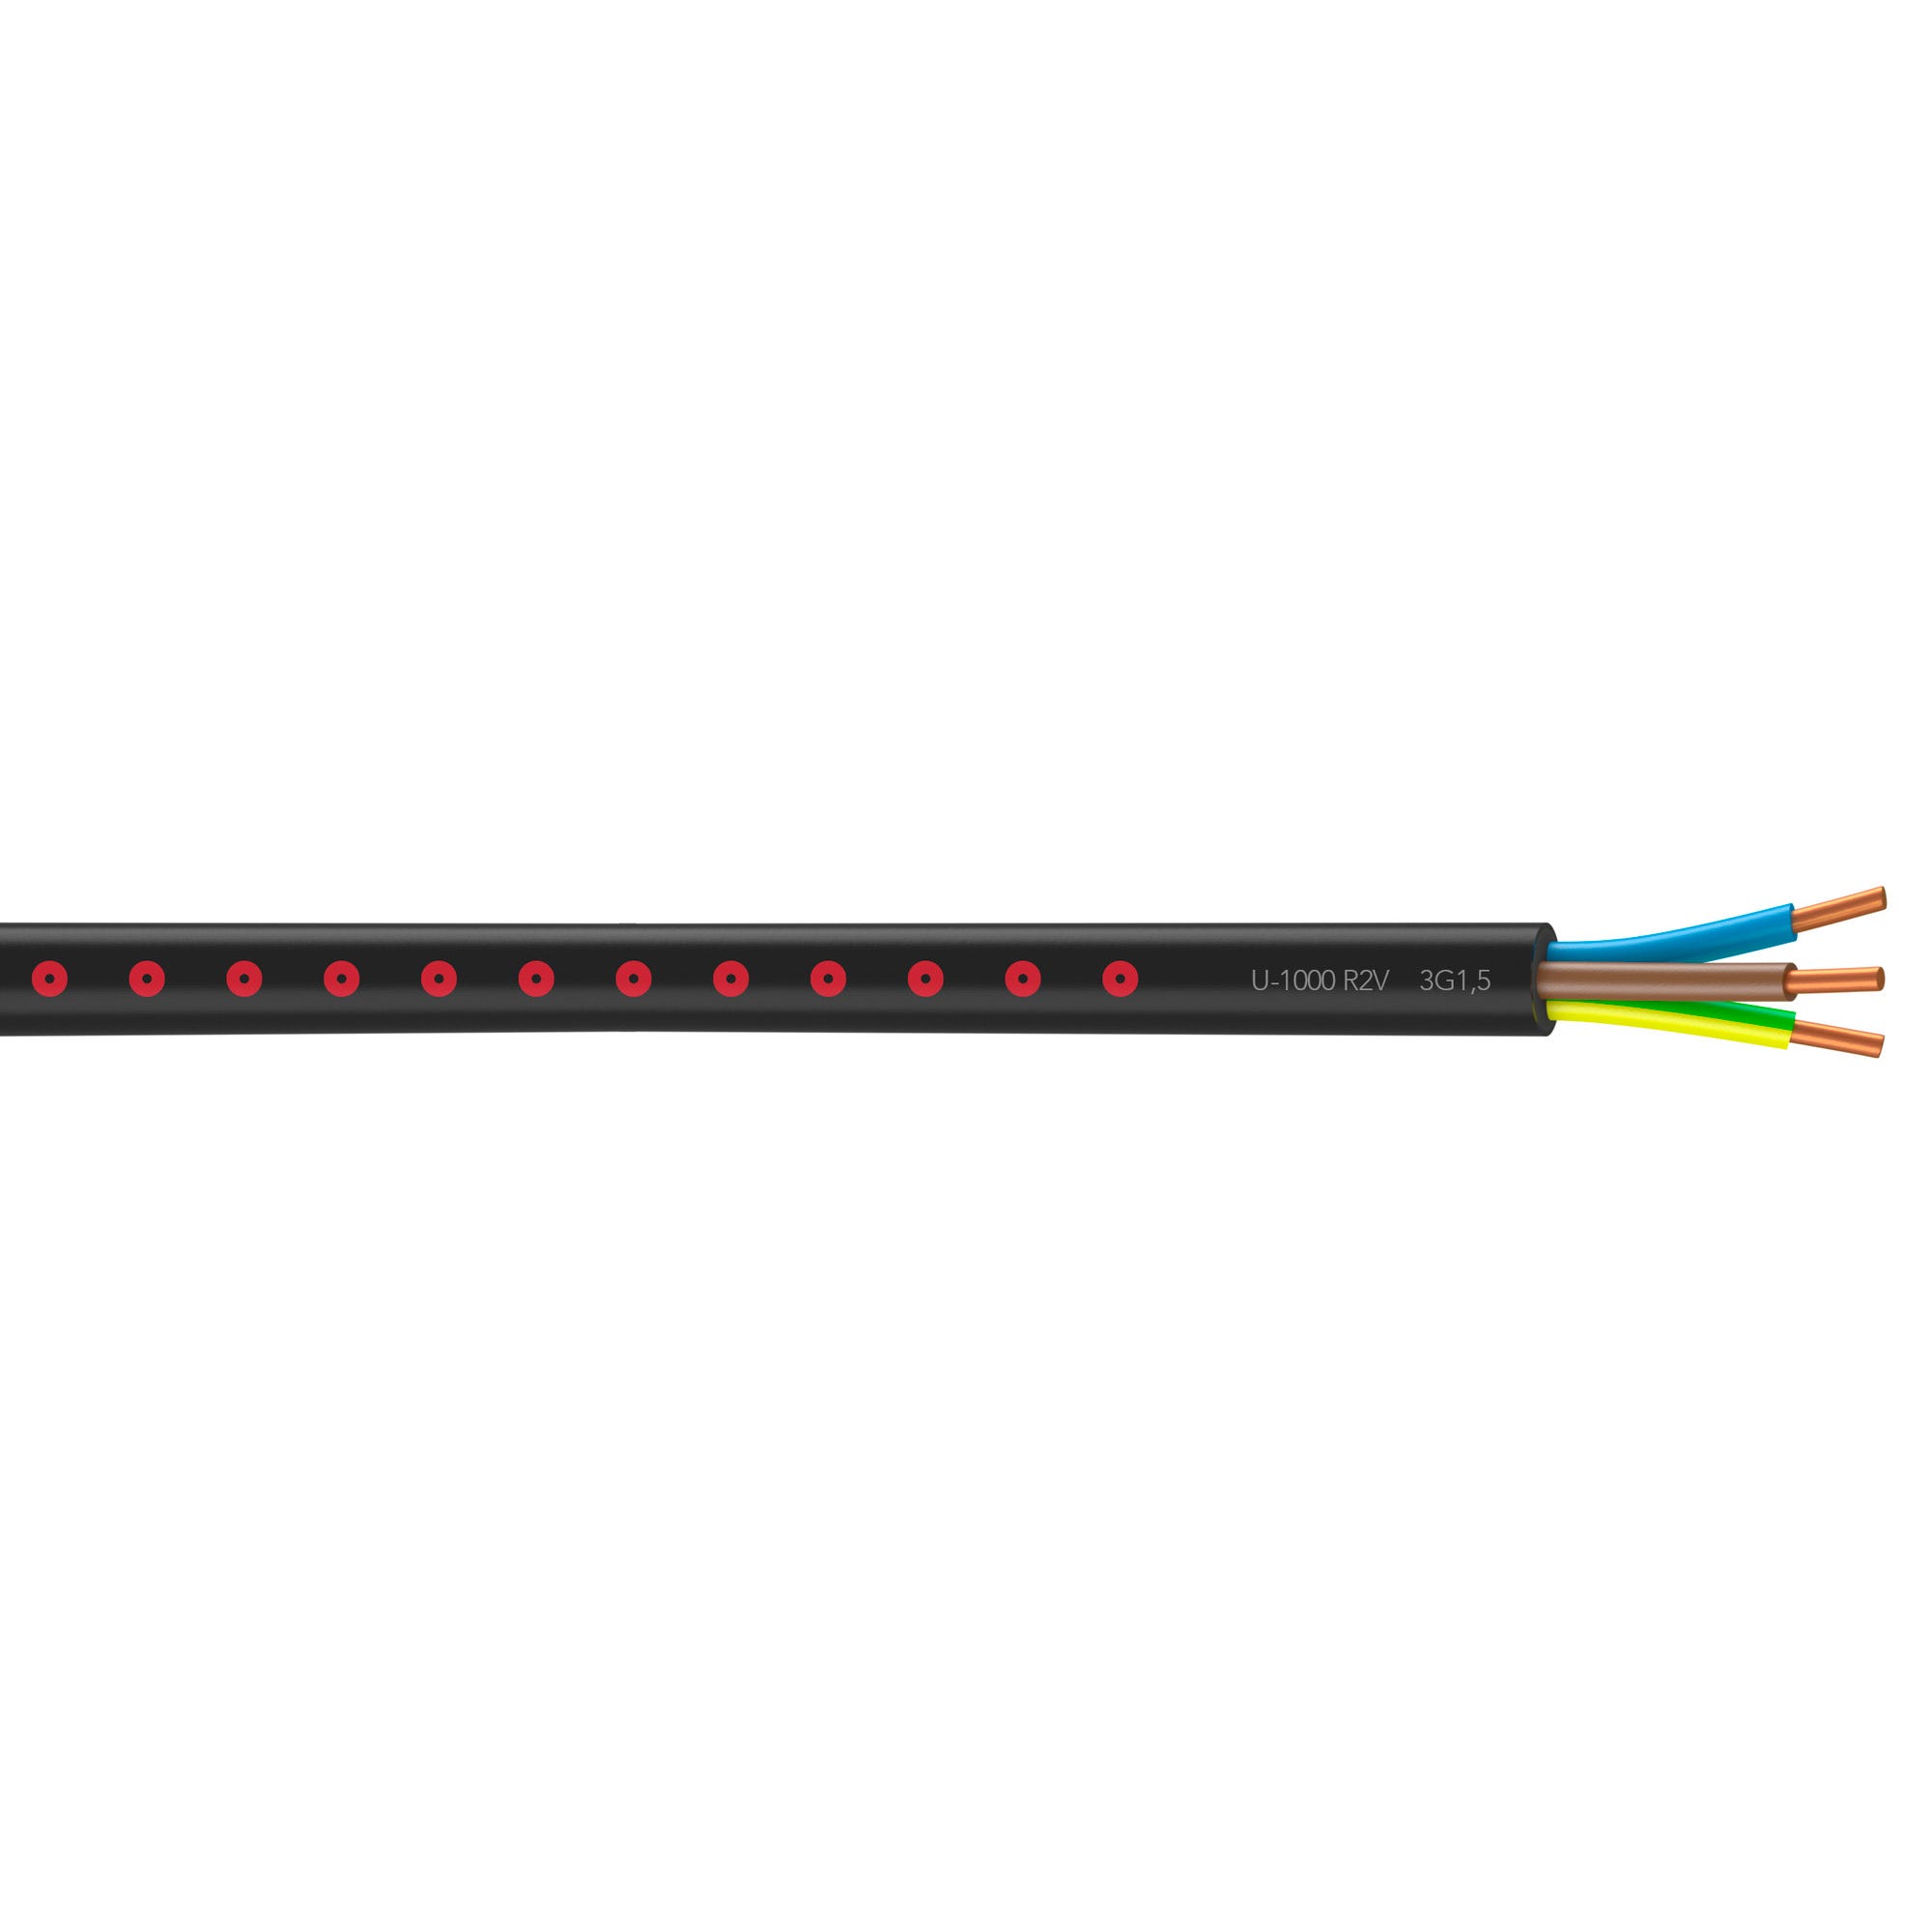 Cable électrique U-1000 R2V 3G 1,5 mm² noir Touret de 500 m - NEXANS FRANCE  1